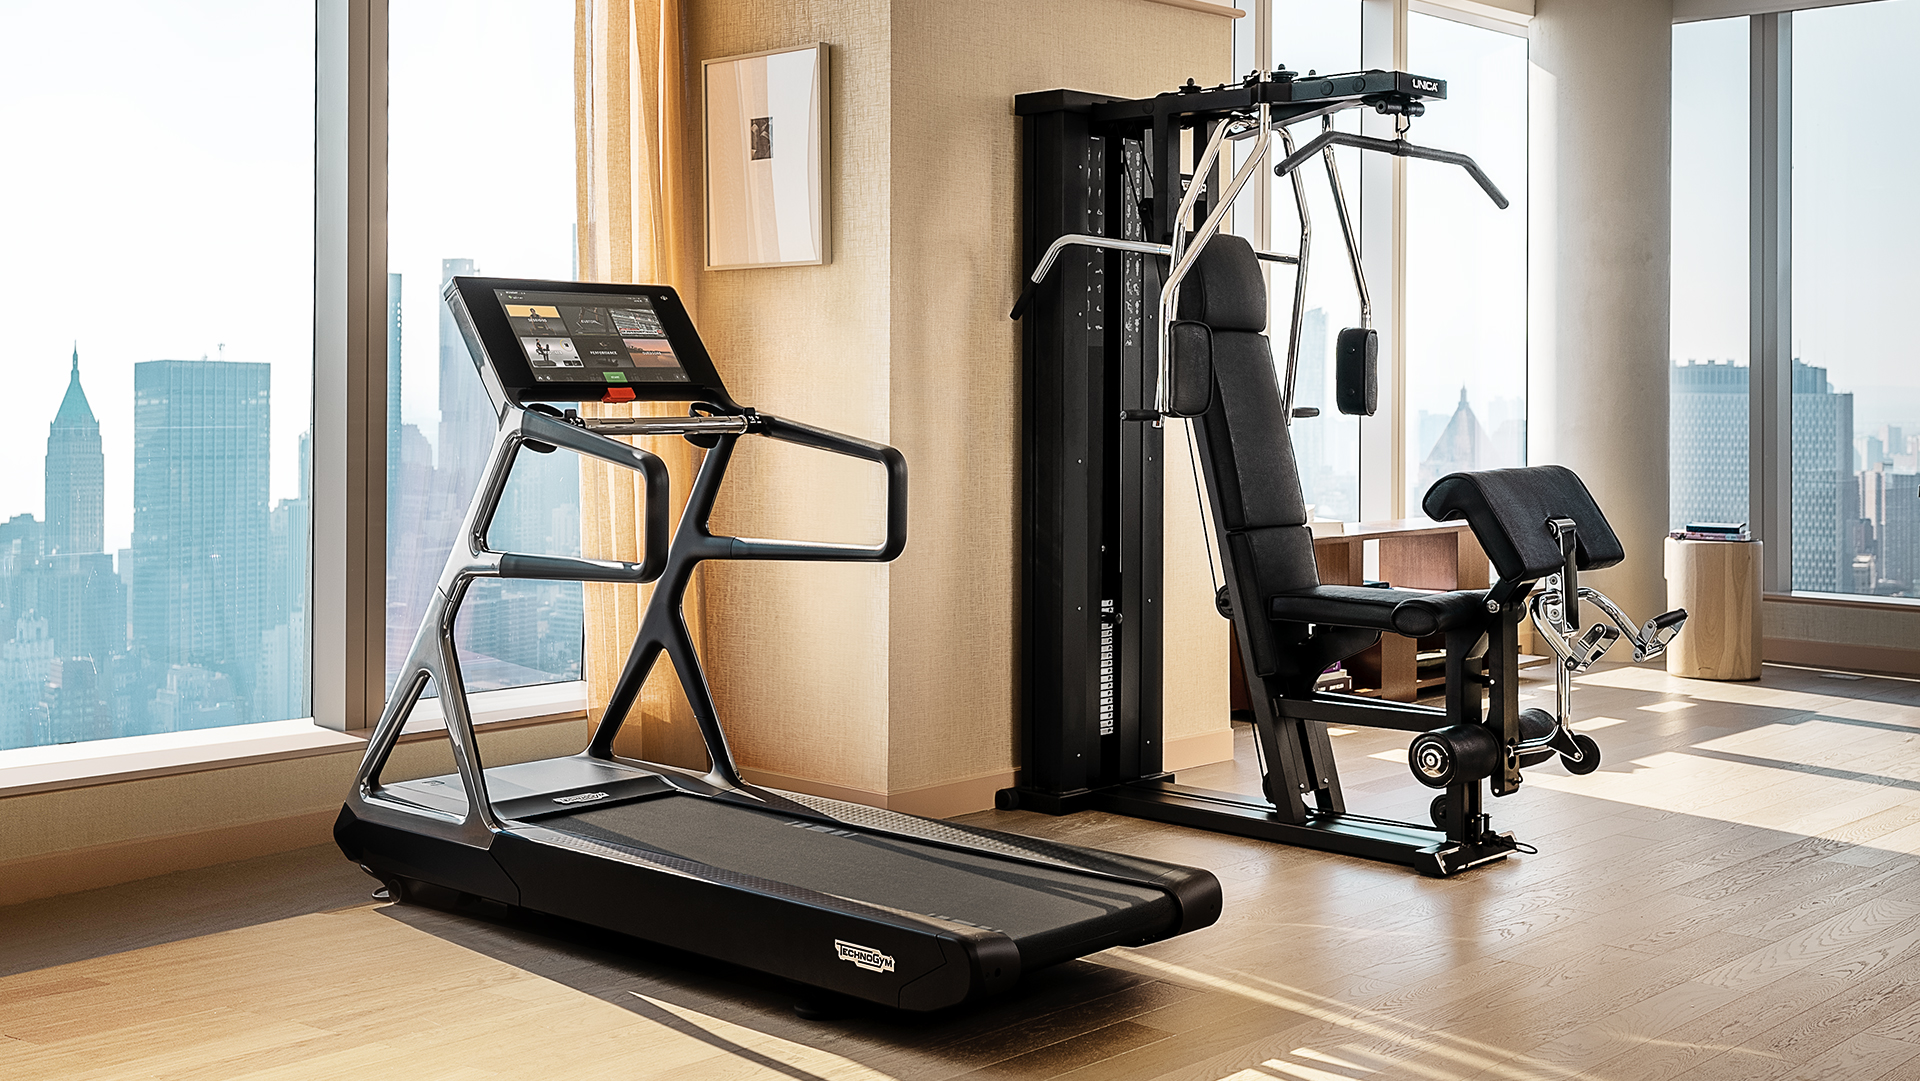 Ejercicios en casa: productos y máquinas básicas para tener tu home gym